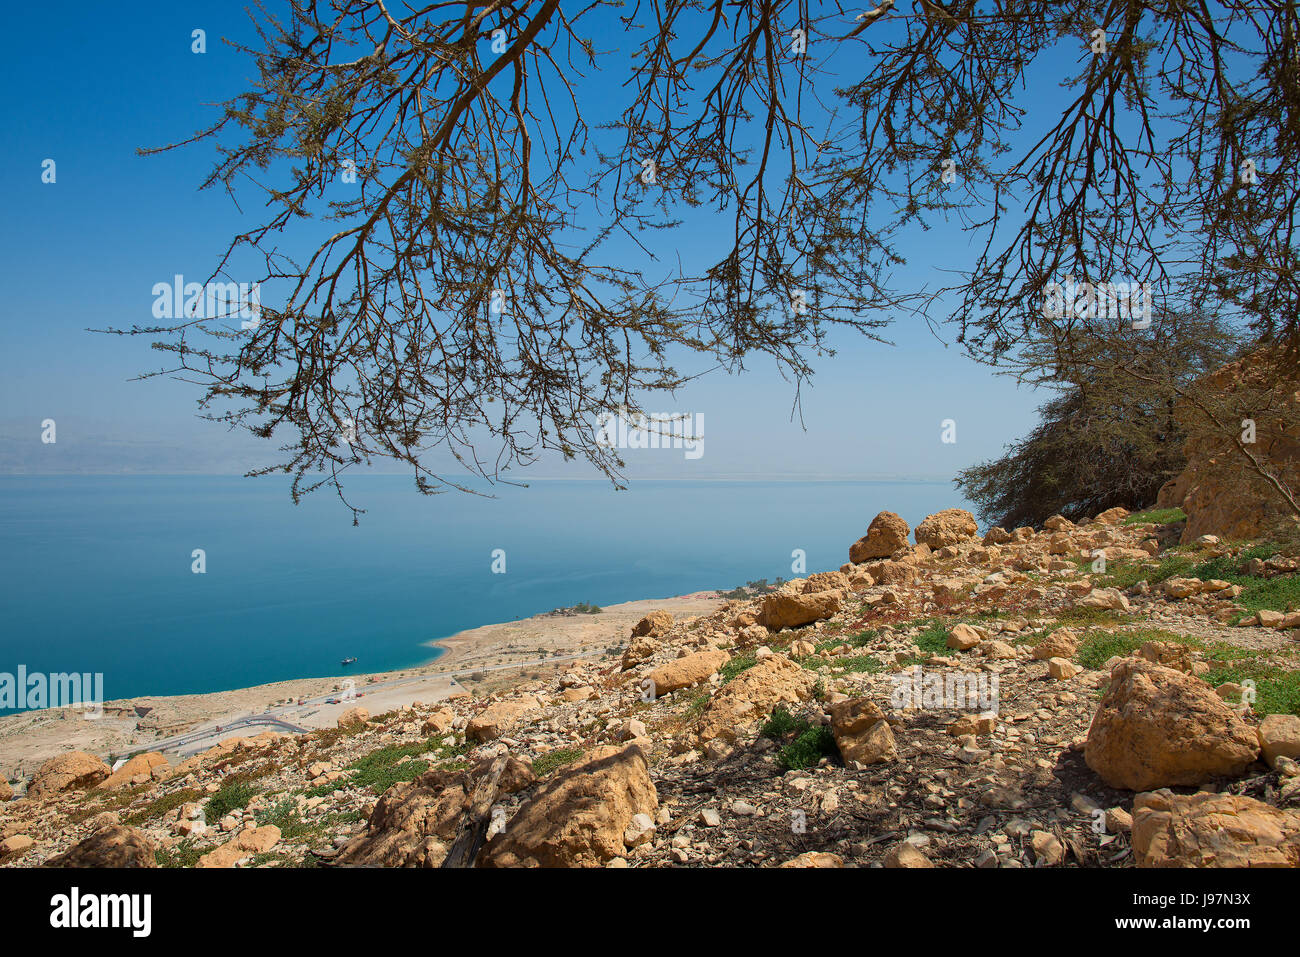 Near En Gedi desert oasis on the western shore of the Dead Sea in Israel. Stock Photo